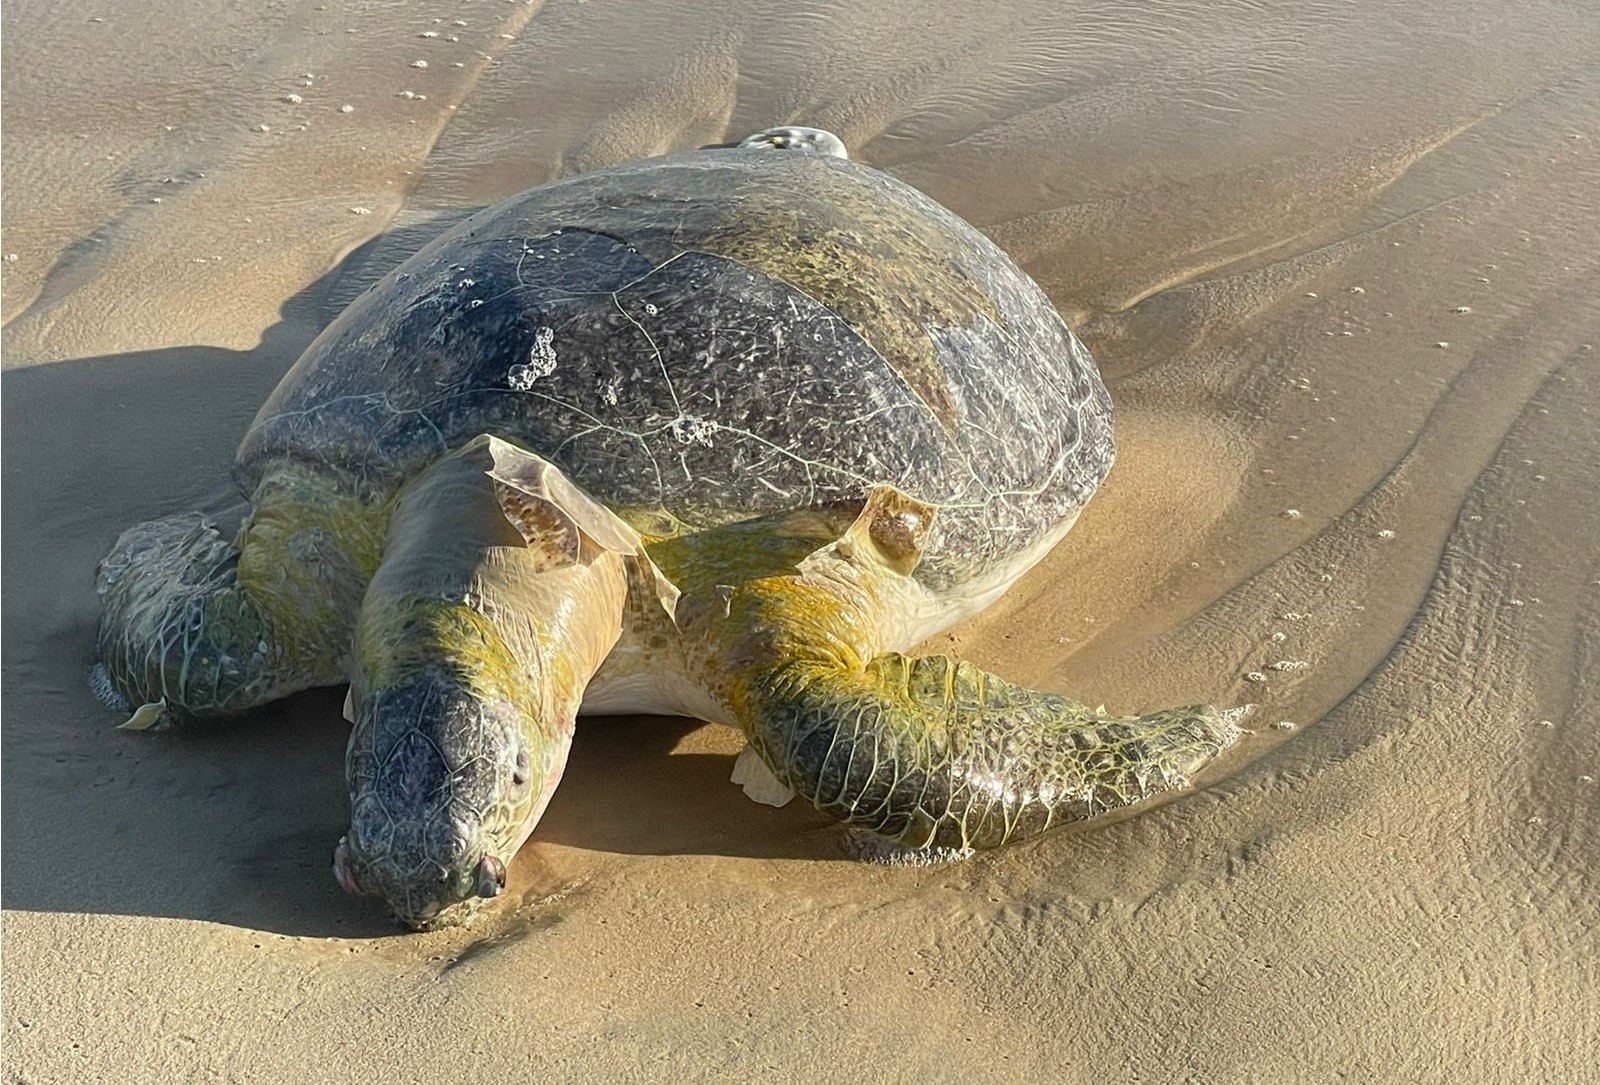 Tartaruga é encontrada morta presa a saco plástico em praia do Ceará